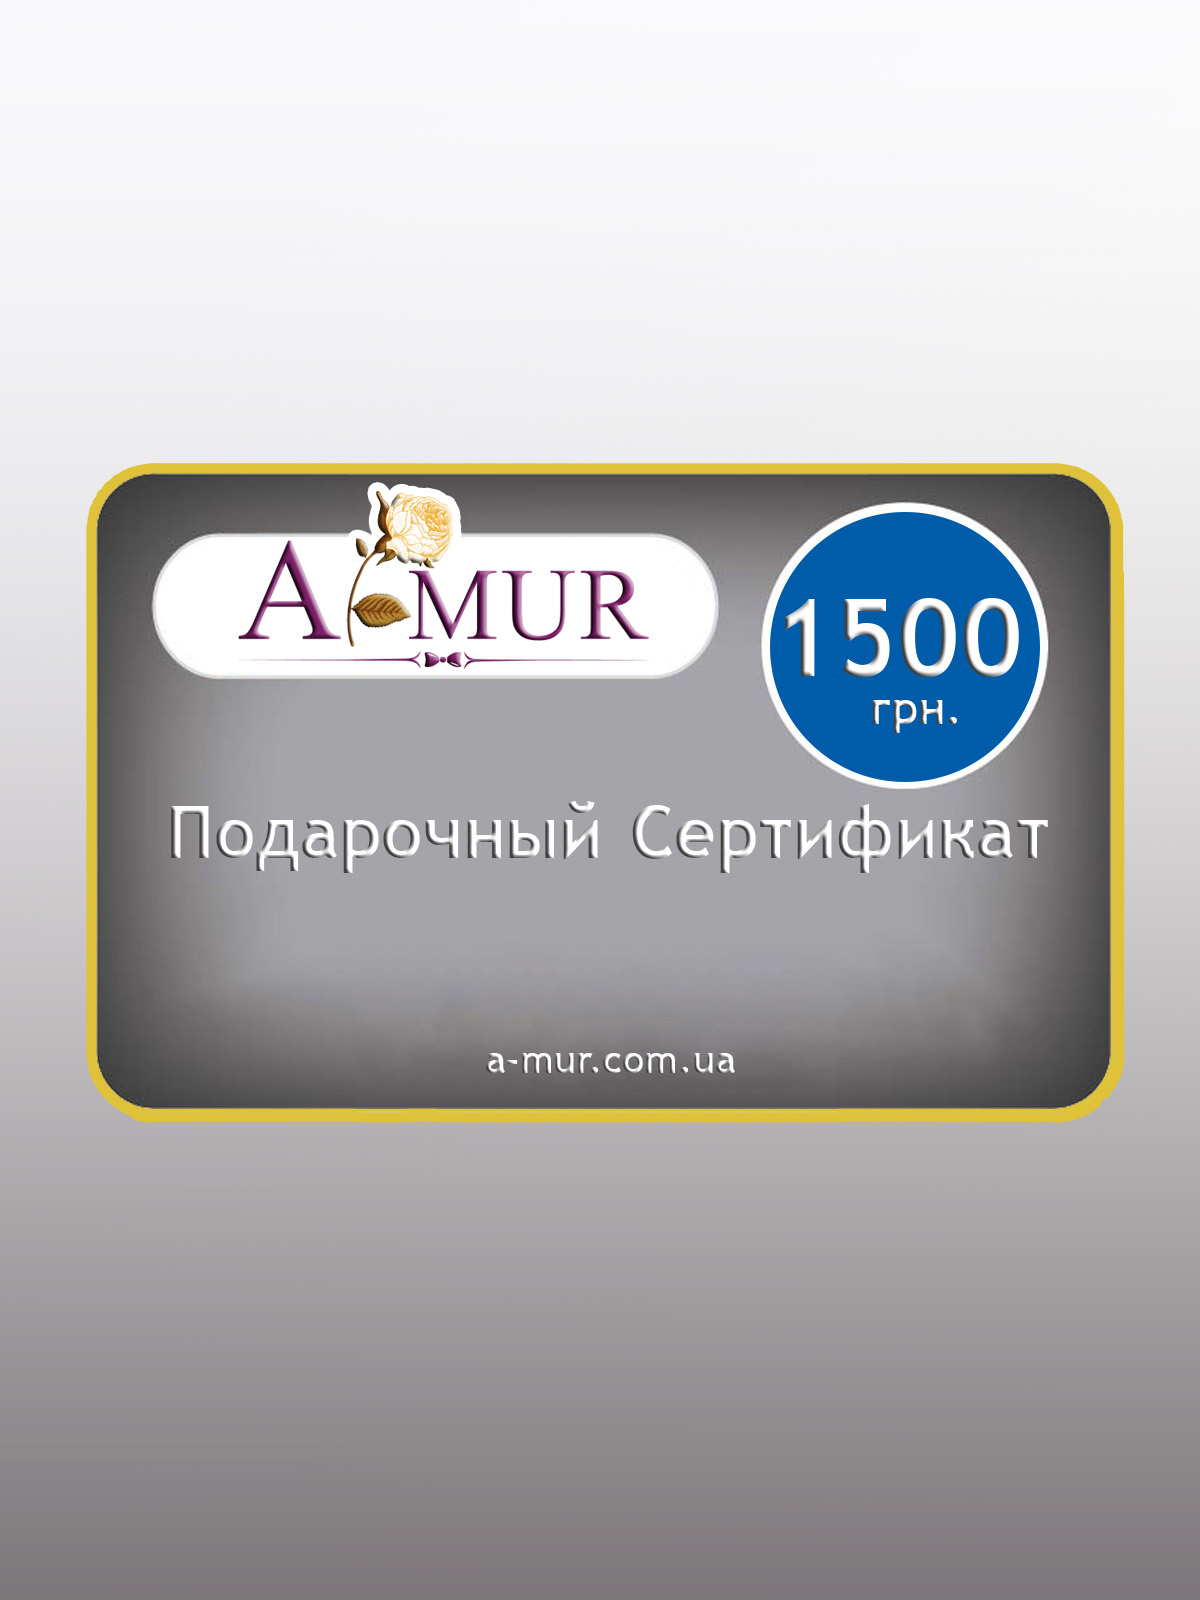 Подарочный сертификат на сумму 1500 грн